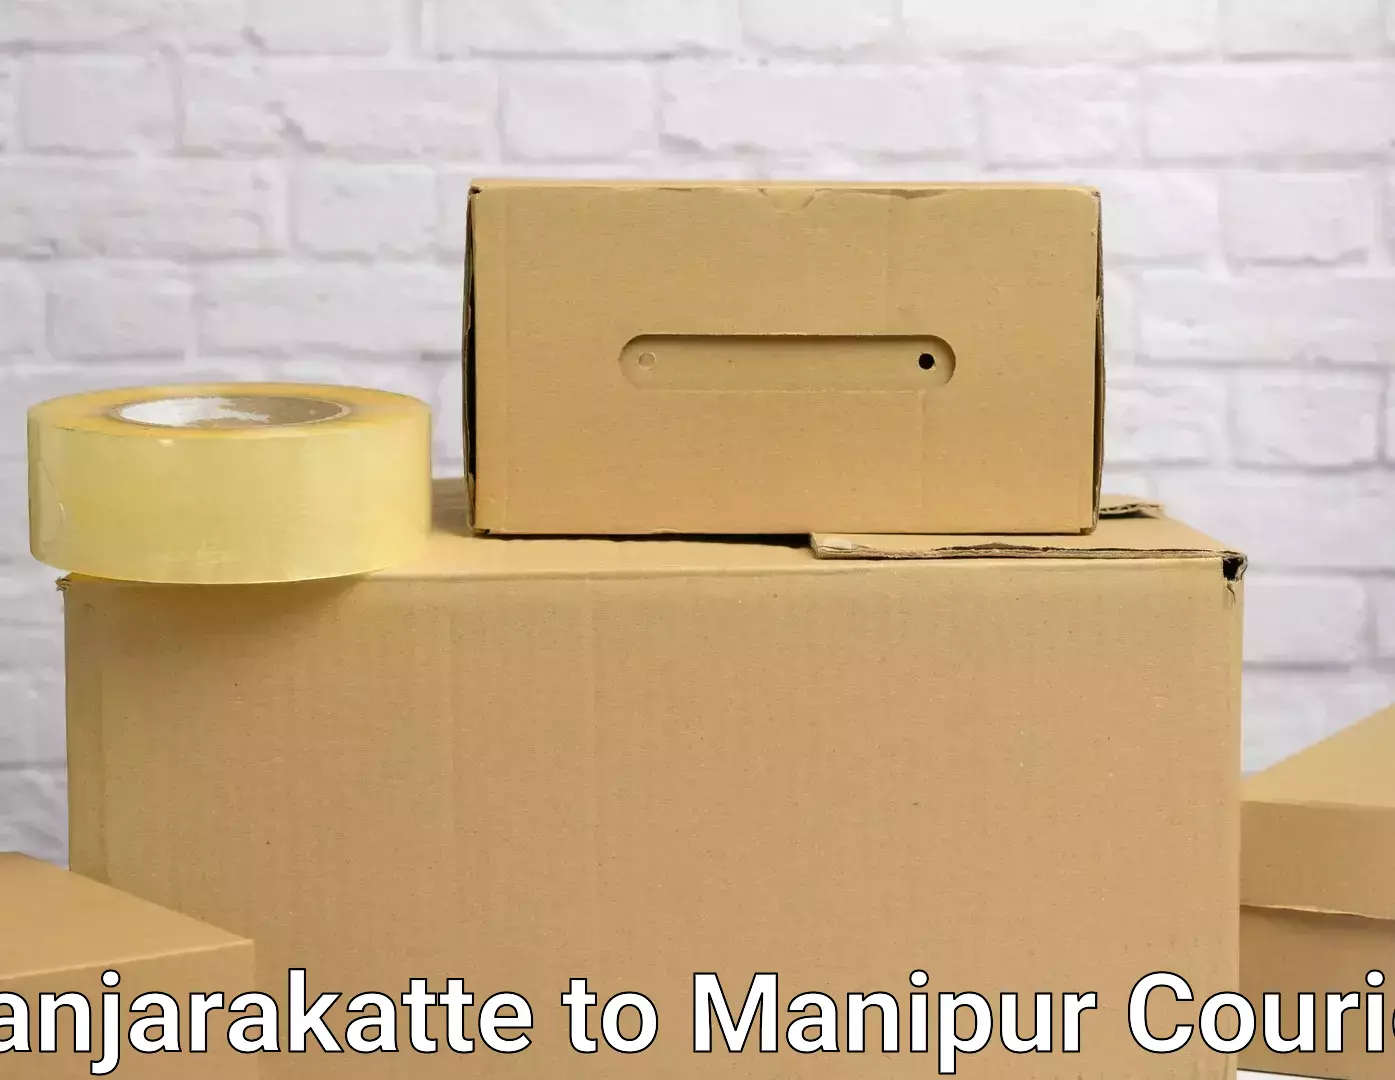 Moving and handling services Kanjarakatte to Kakching